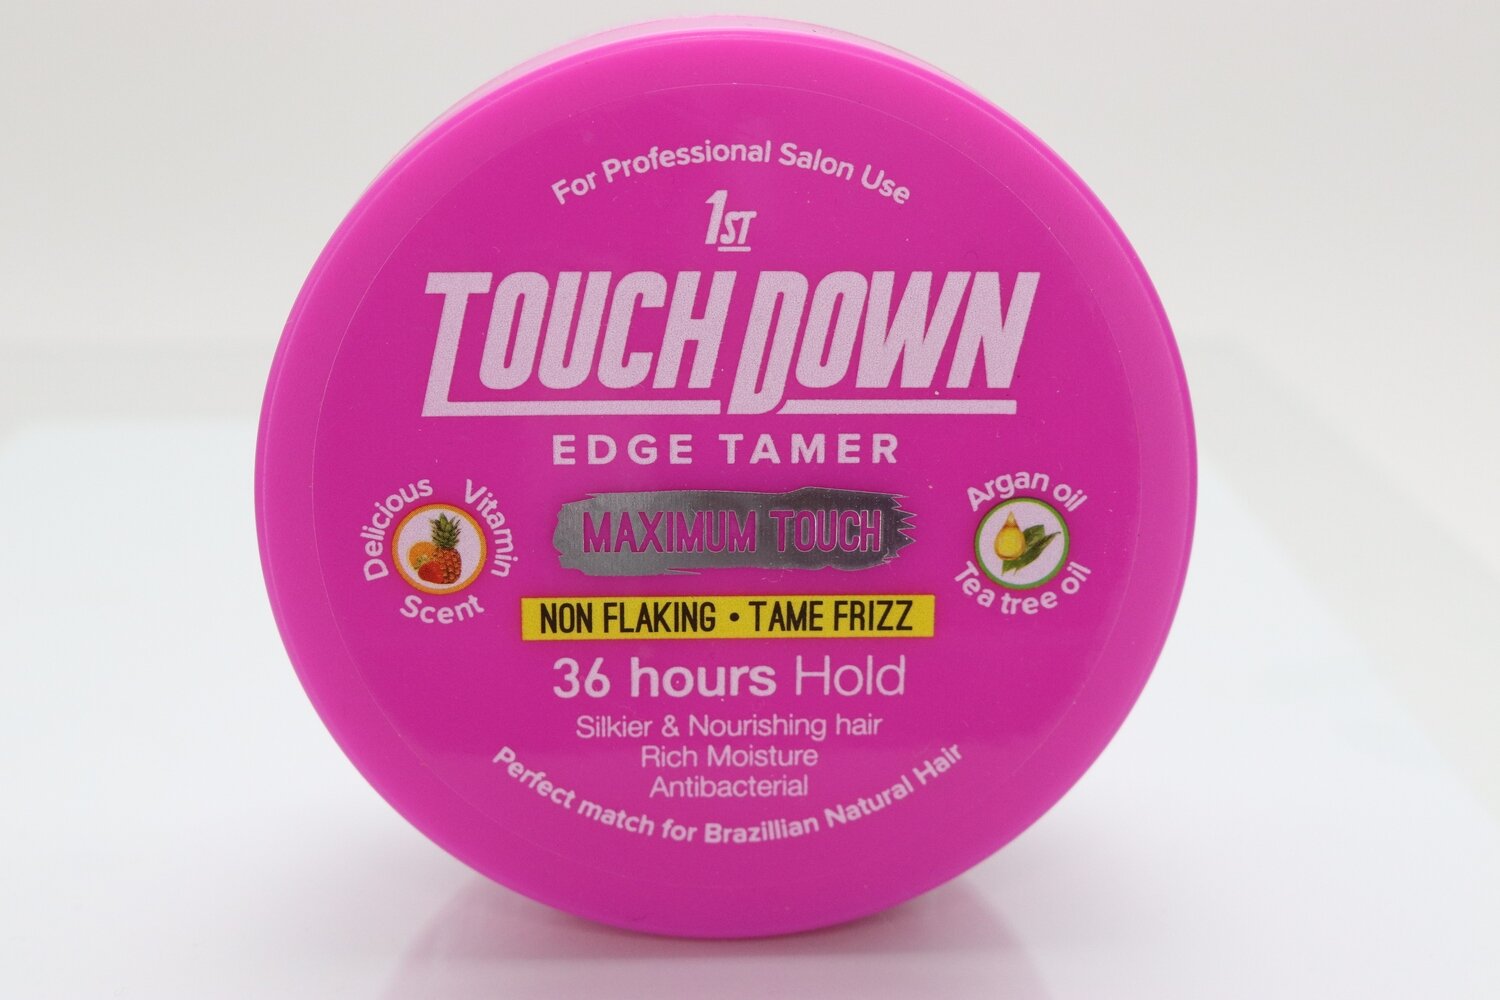 1st Touch Down- Edge Tamer Maximum Touch 4.4oz